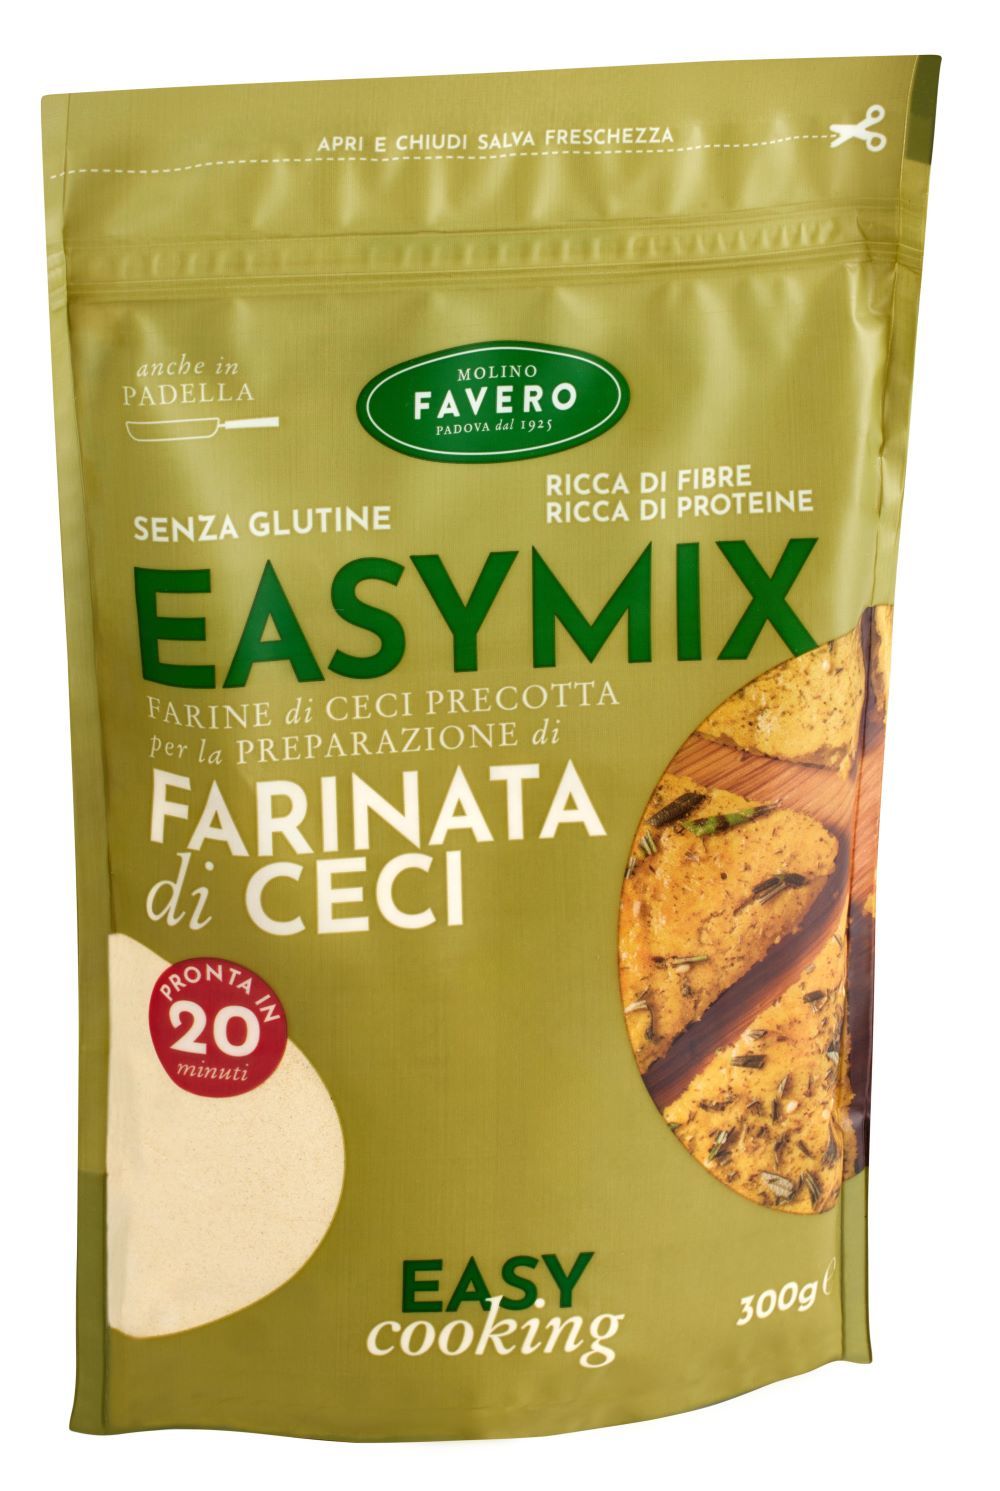 Molino Favero crea la nuova linea Easy Mix senza glutine 